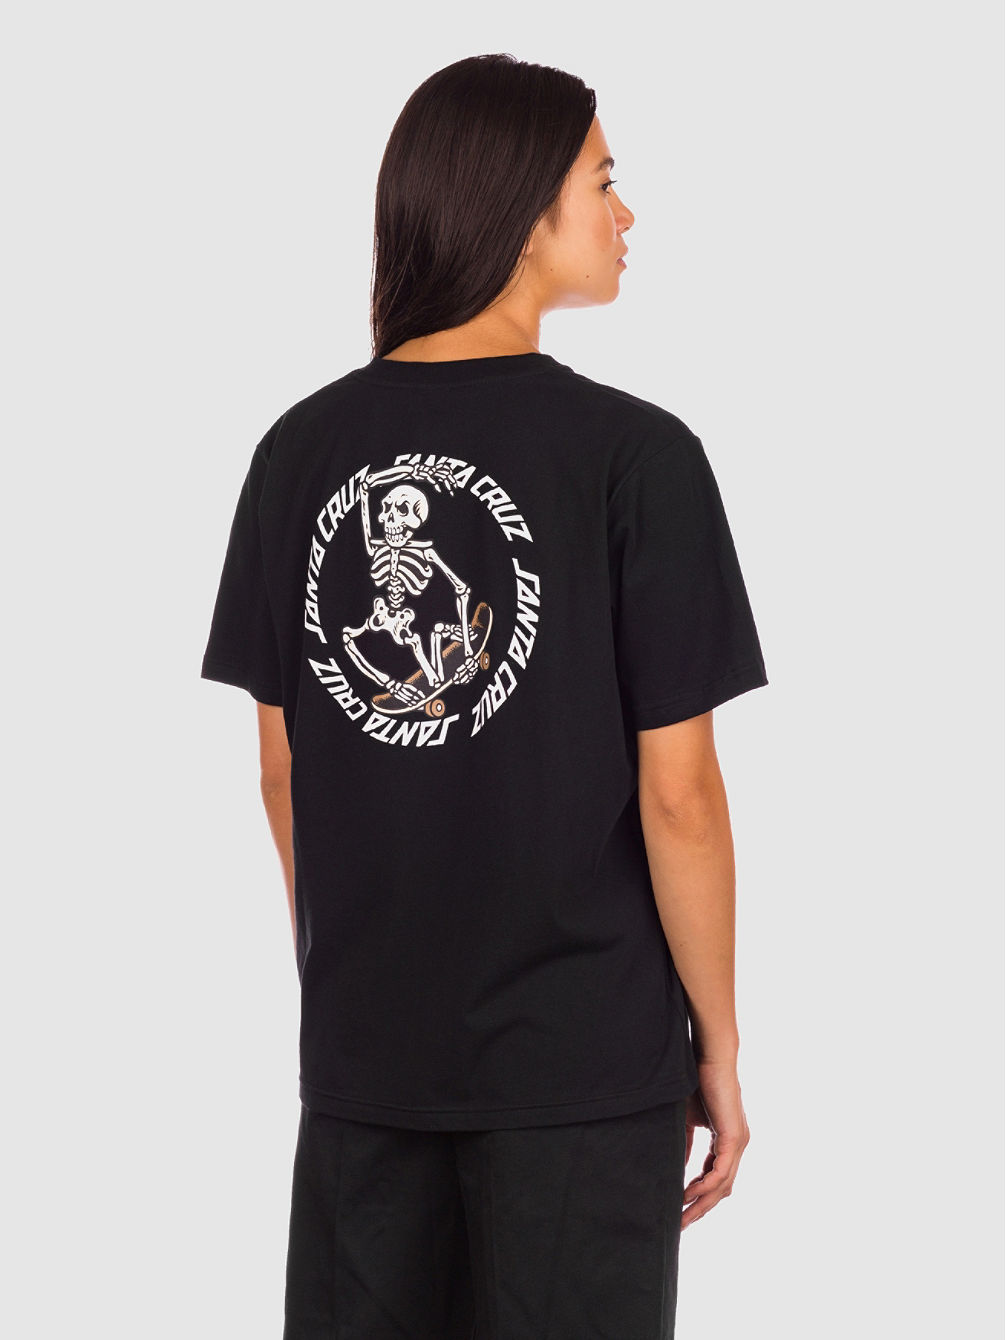 BT Skate Riot T-Shirt